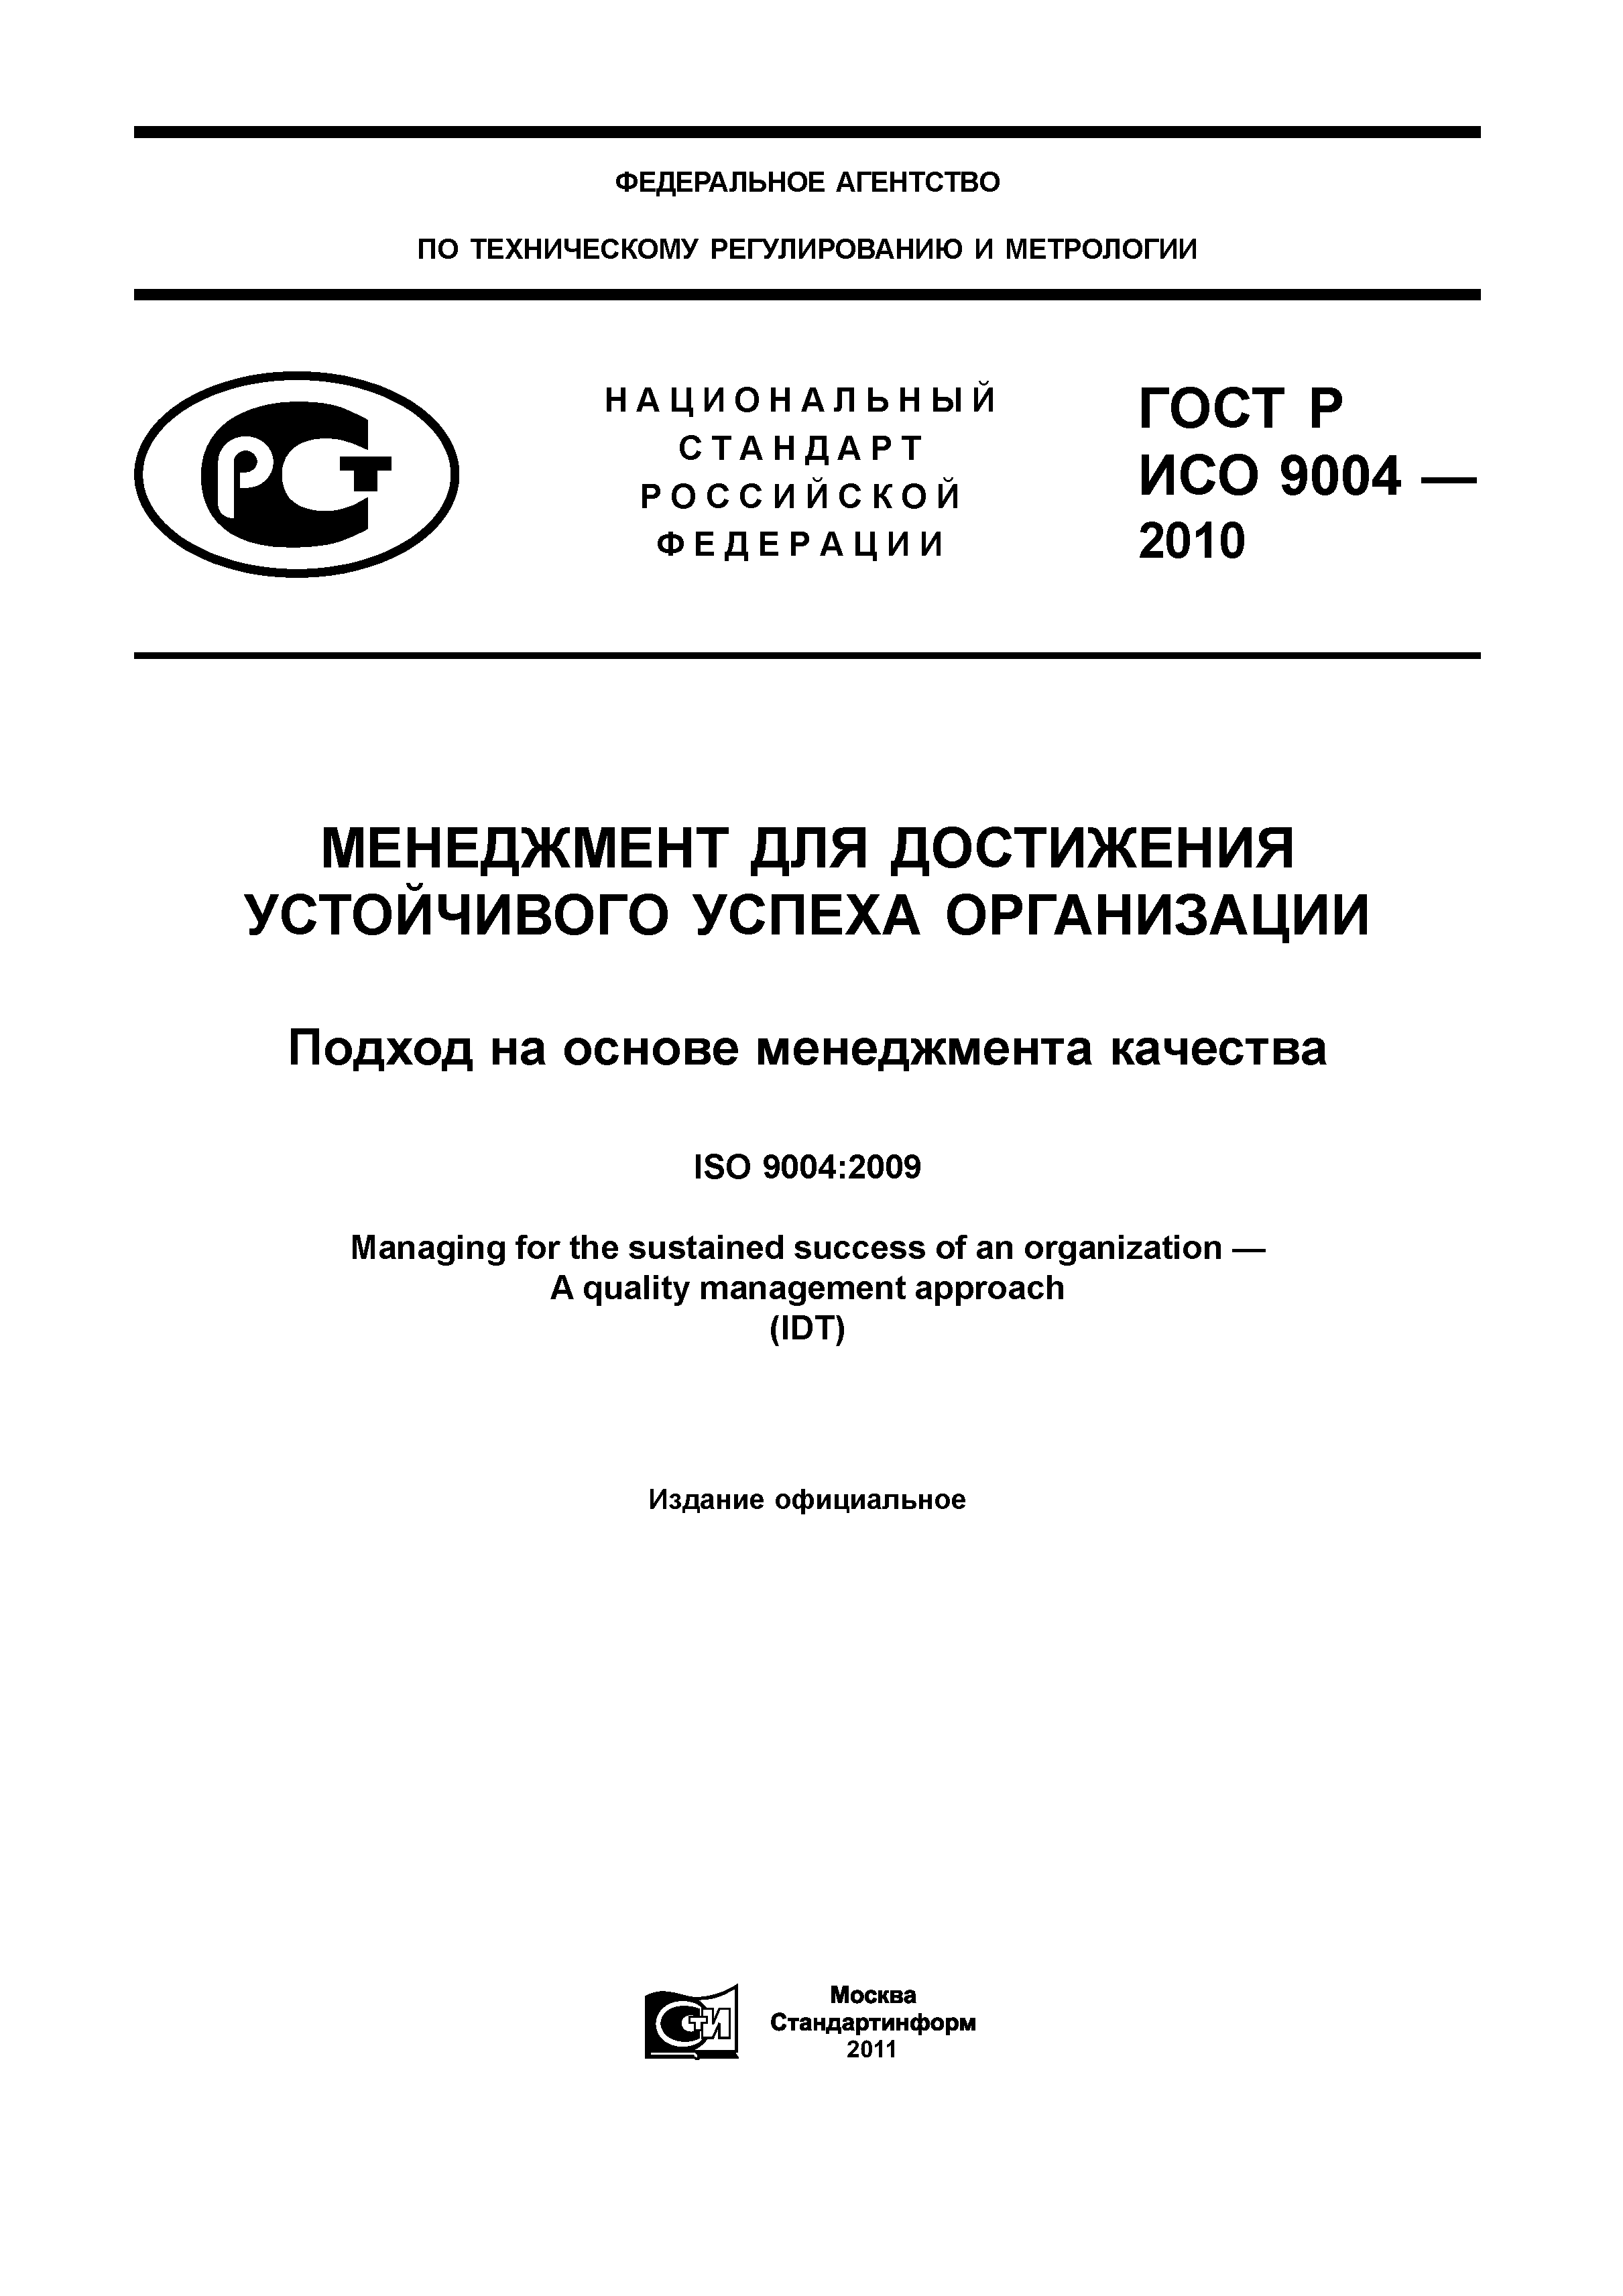 ГОСТ Р ИСО 9004-2010